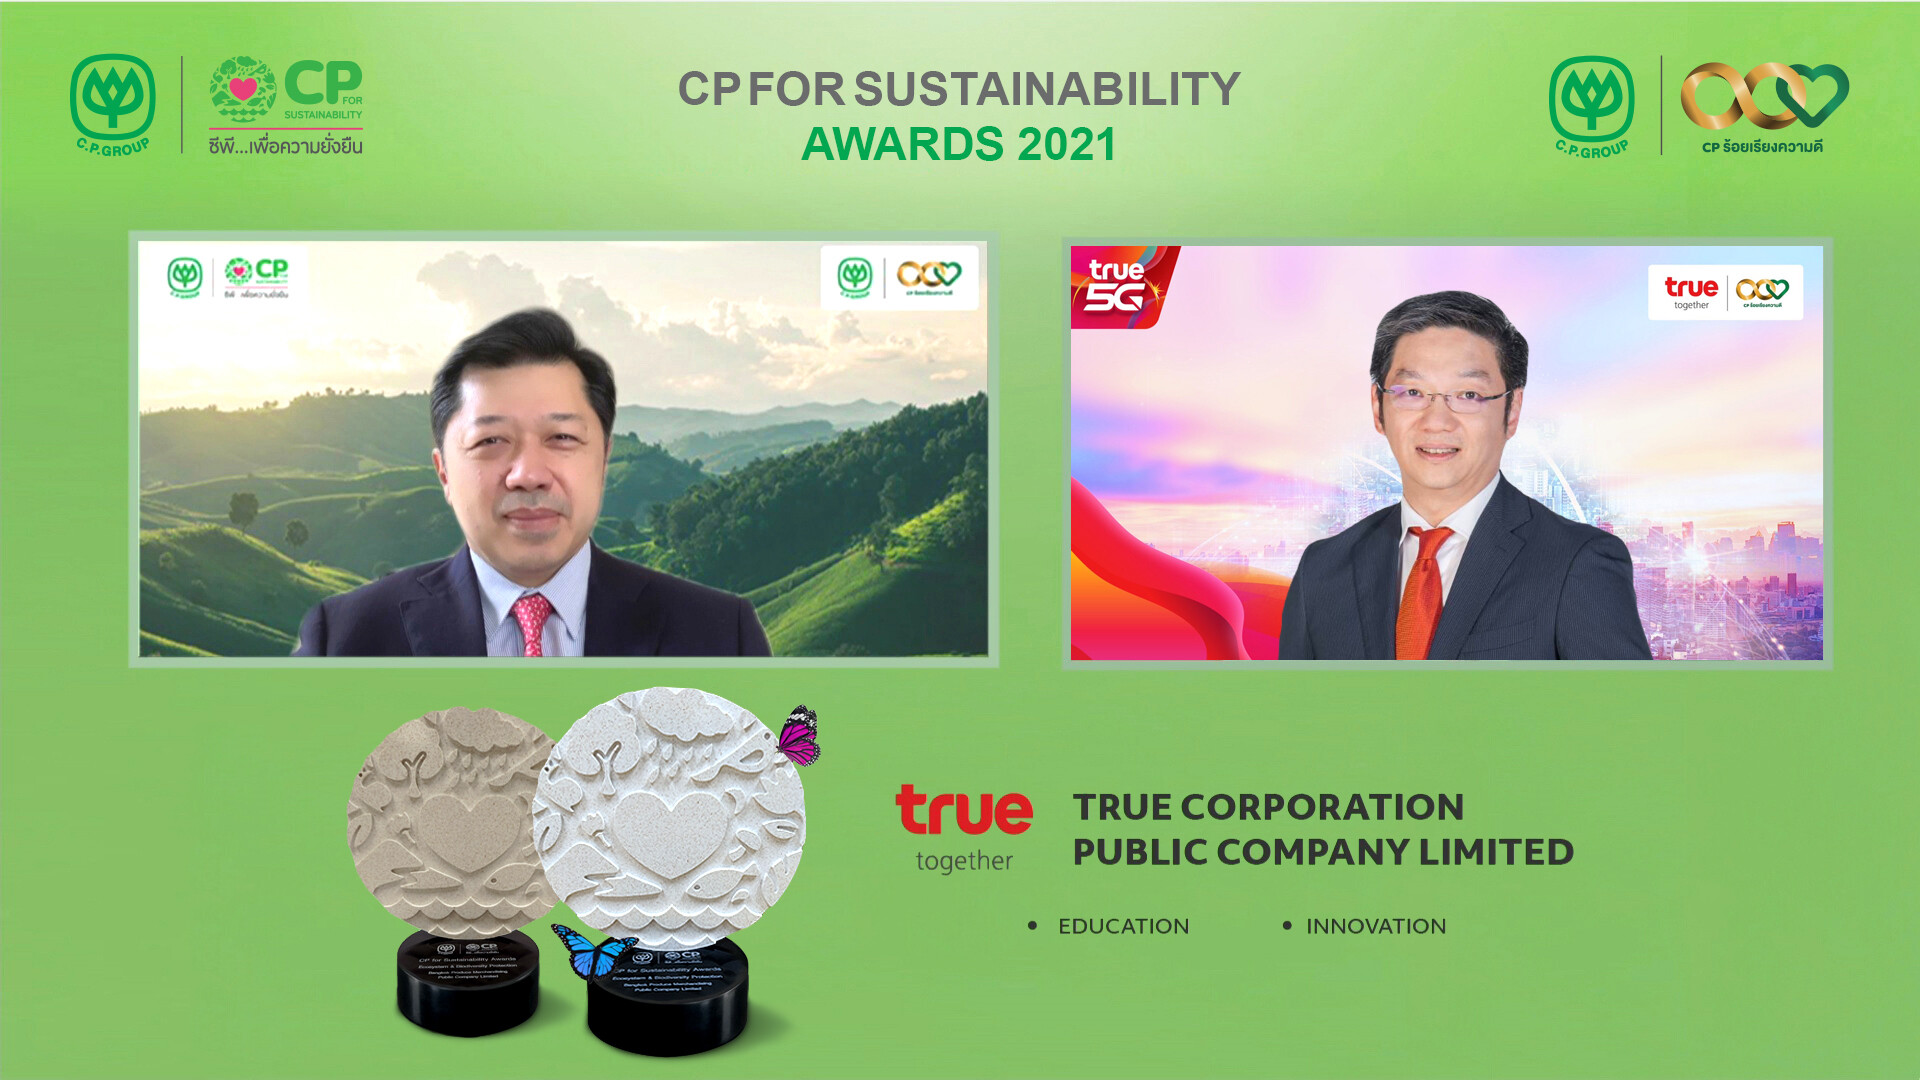 กลุ่มทรู รับ 2 รางวัลความยั่งยืนดีเด่น "CP for Sustainability Awards 2021" ภูมิใจเป็นแบบอย่างที่ดีด้านการบริหารจัดการนวัตกรรม และด้านการศึกษา